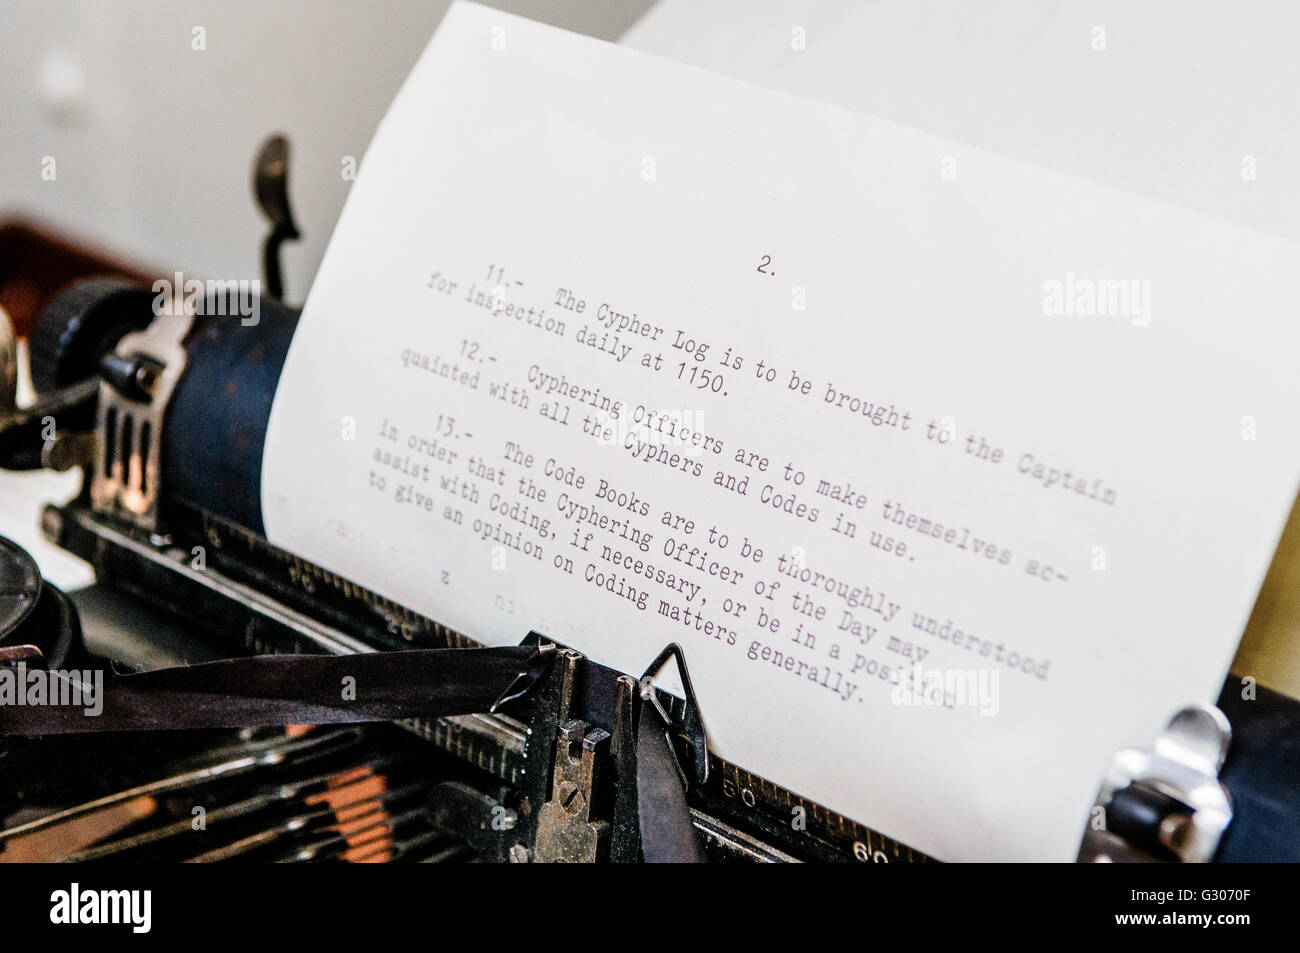 Altmodische Schreibmaschine mit Anweisungen für Cypher Nachrichten an Bord eines Kriegsschiffes WW1. Stockfoto